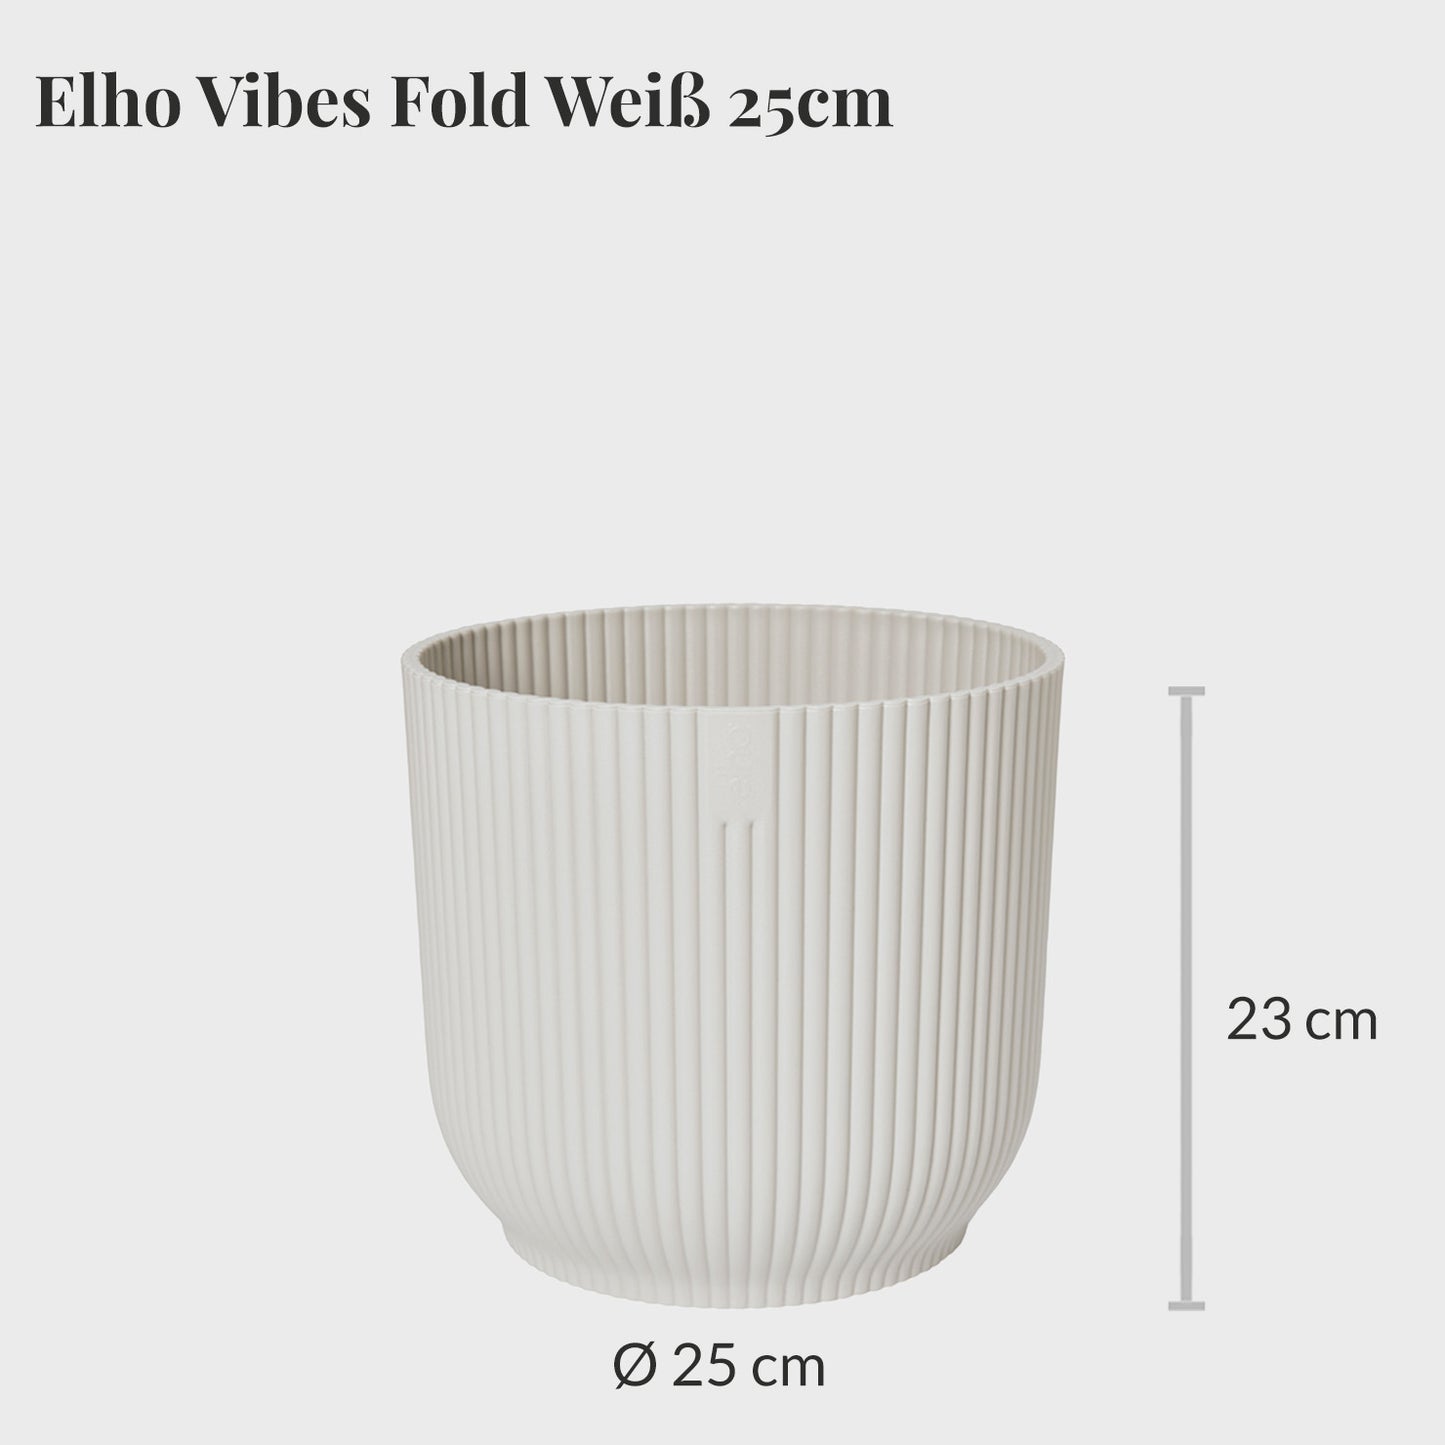 Elho Vibes Fold 25cm